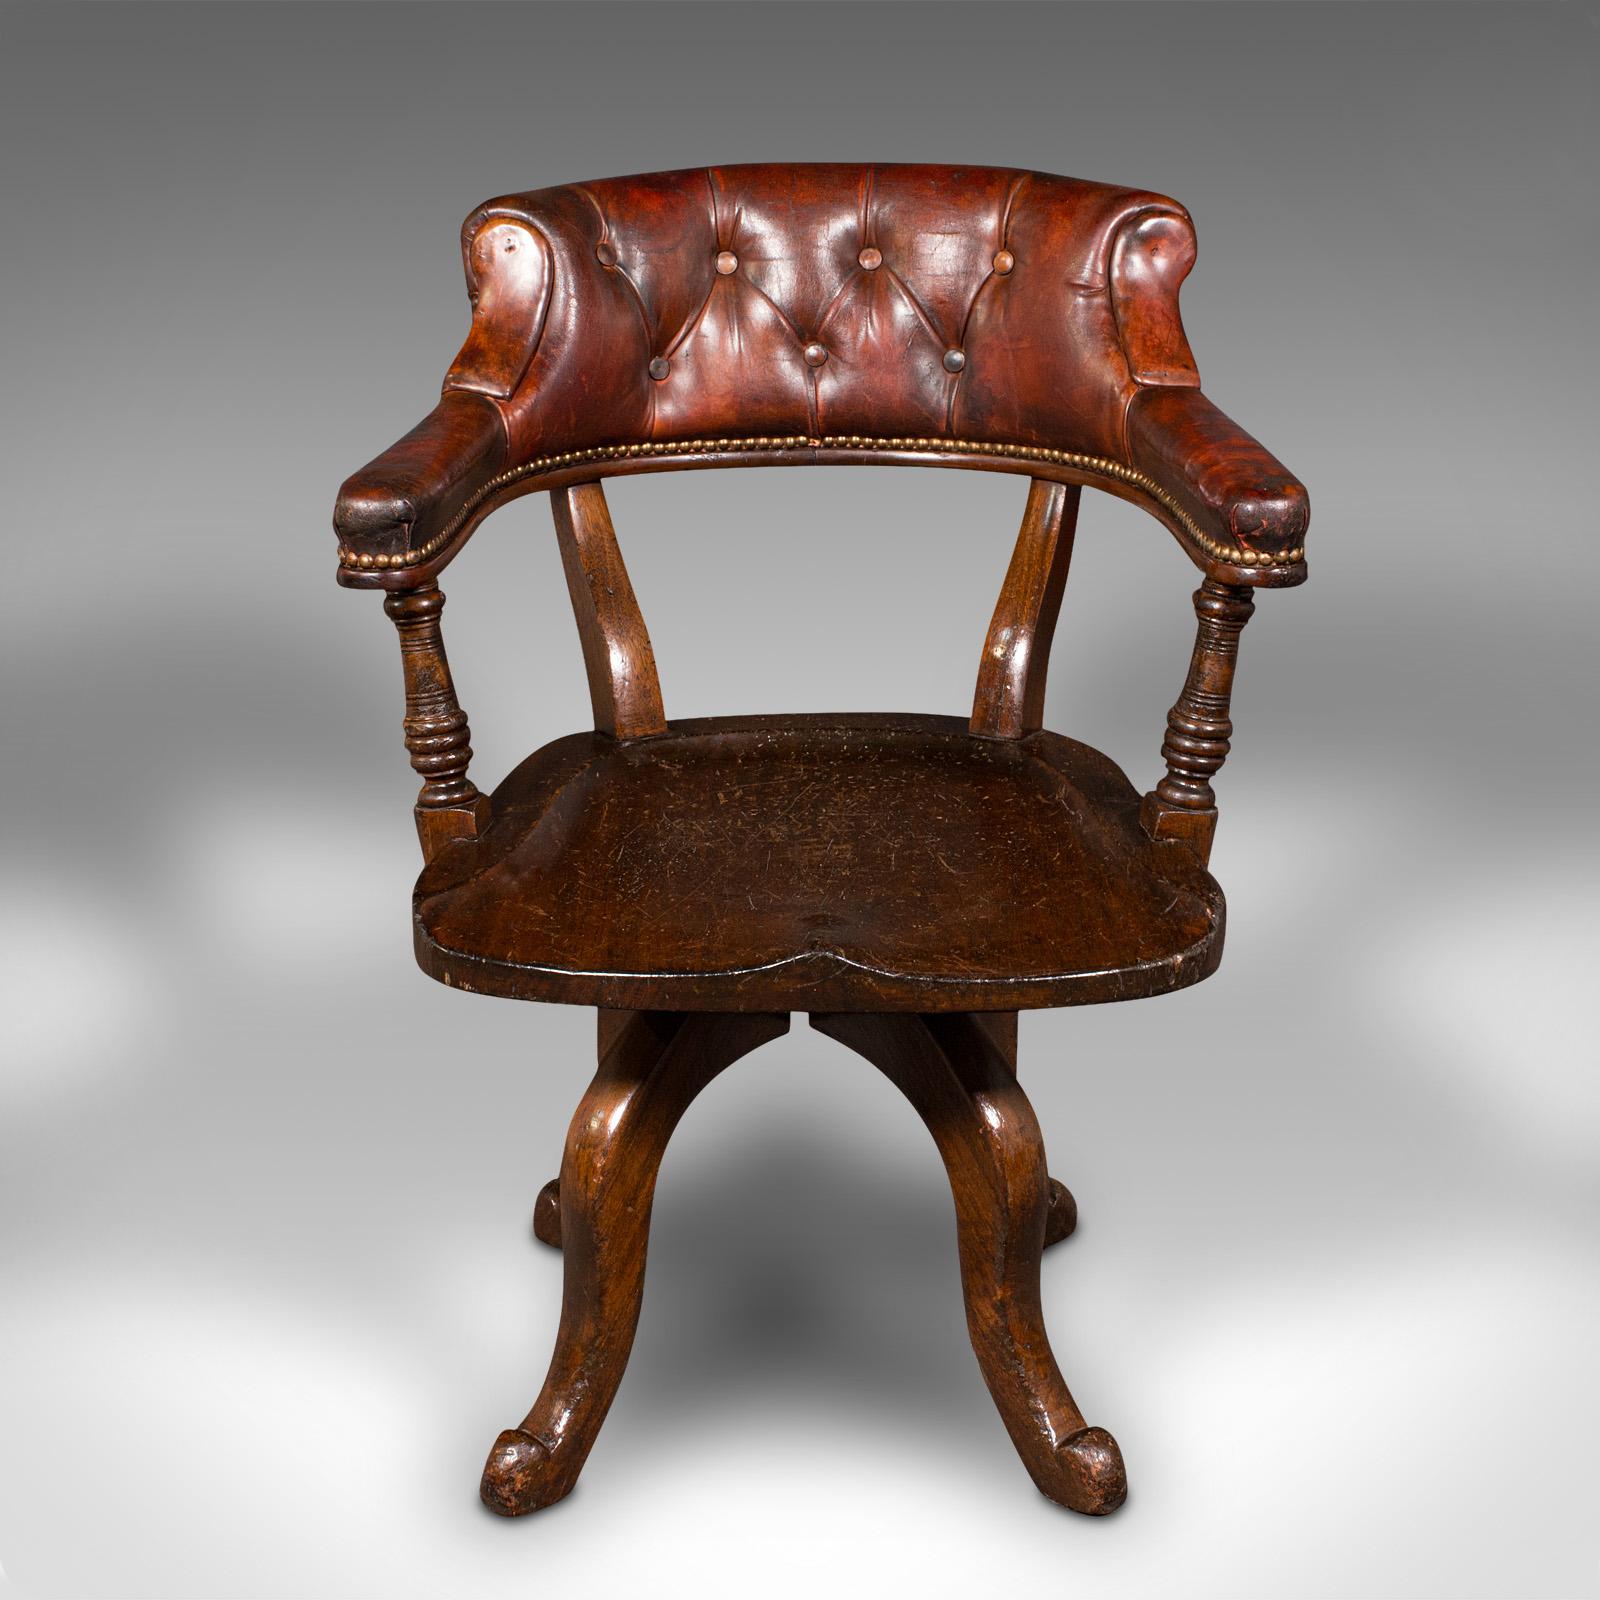 Dies ist ein antiker Pförtnerstuhl für den Flur. Ein englischer Schreibtischstuhl aus Mahagoni und Leder aus der viktorianischen Zeit, um 1880.

Hervorragende Farbe und anmutiges Aussehen dieses vielseitigen Stuhls
Zeigt eine wünschenswerte